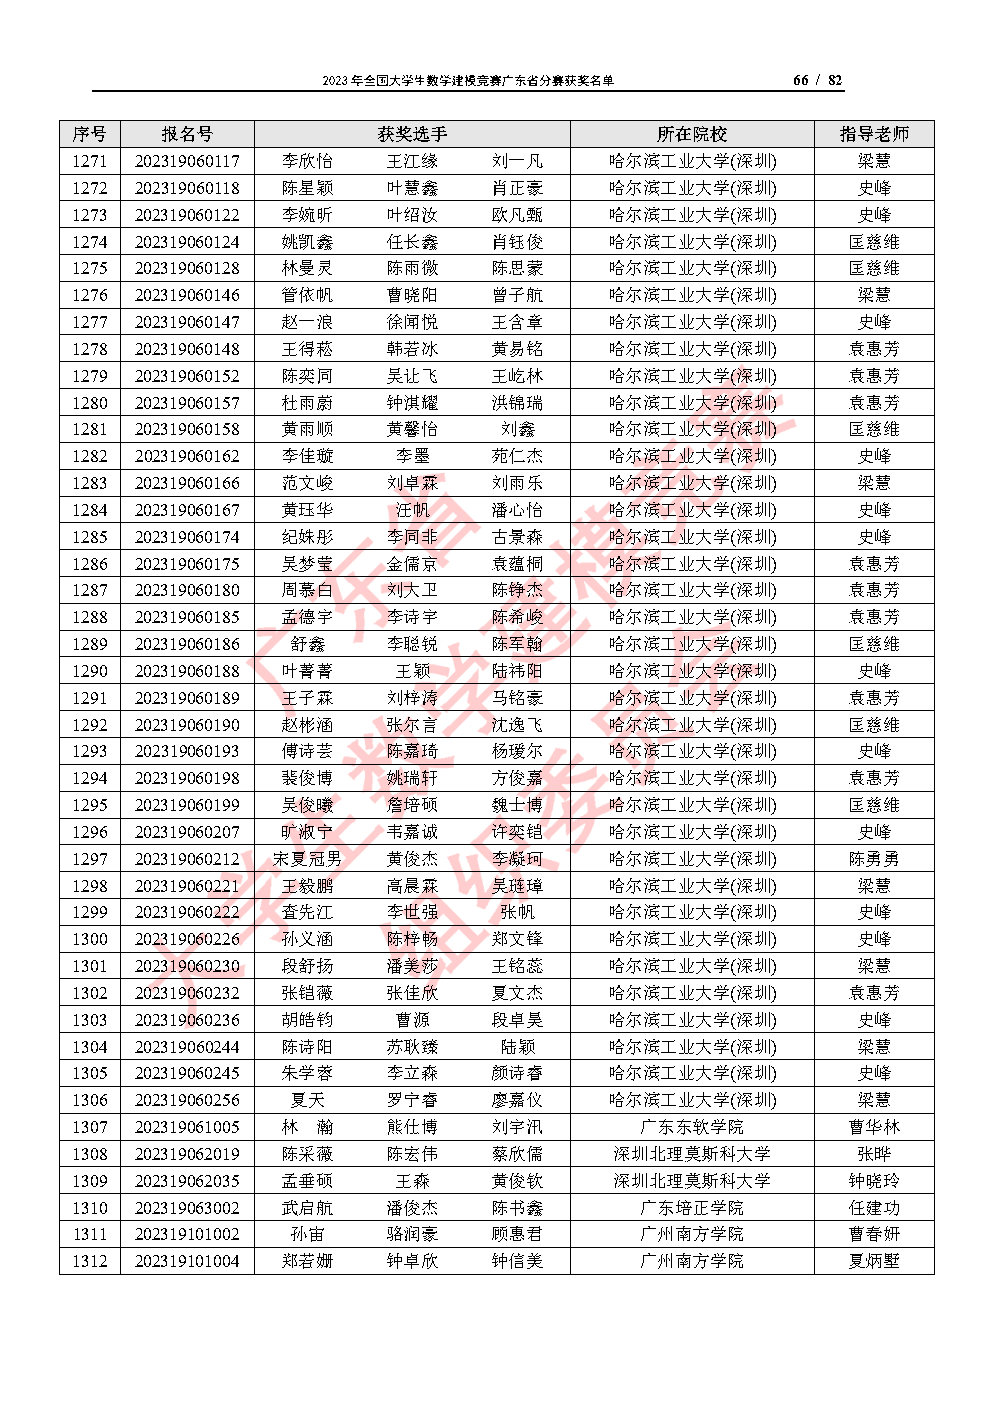 2023年全国大学生数学建模竞赛广东省分赛获奖名单_Page66.jpg